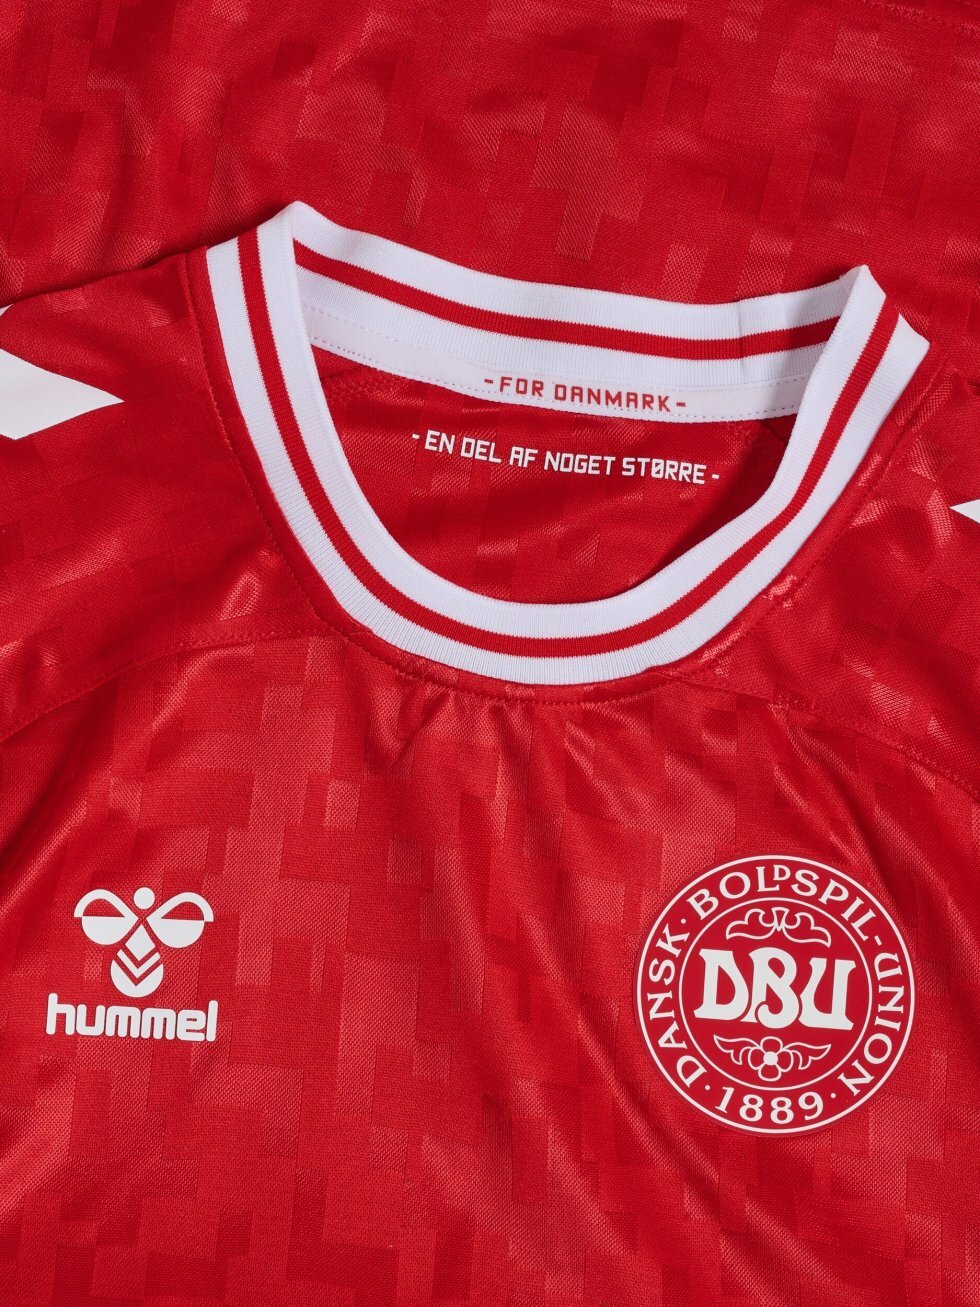 DBU/Hummel - Her er historien bag landsholdets EM-trøje